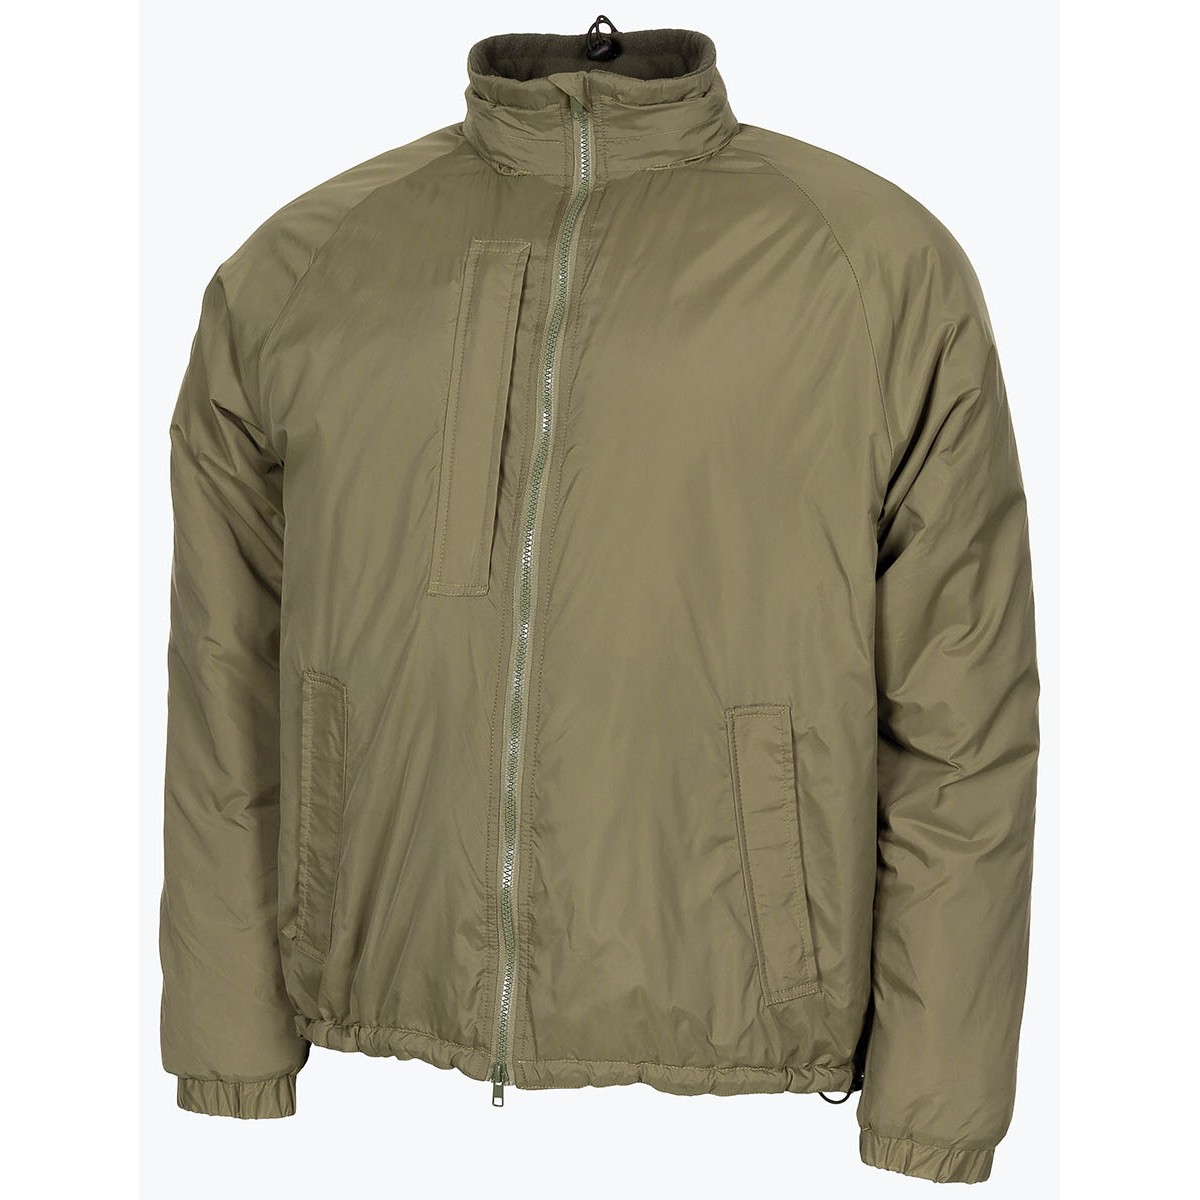 Bunda zateplovací zelená GB Softie Thermal Jacket OD Green MFH® Adventure Velikost: M